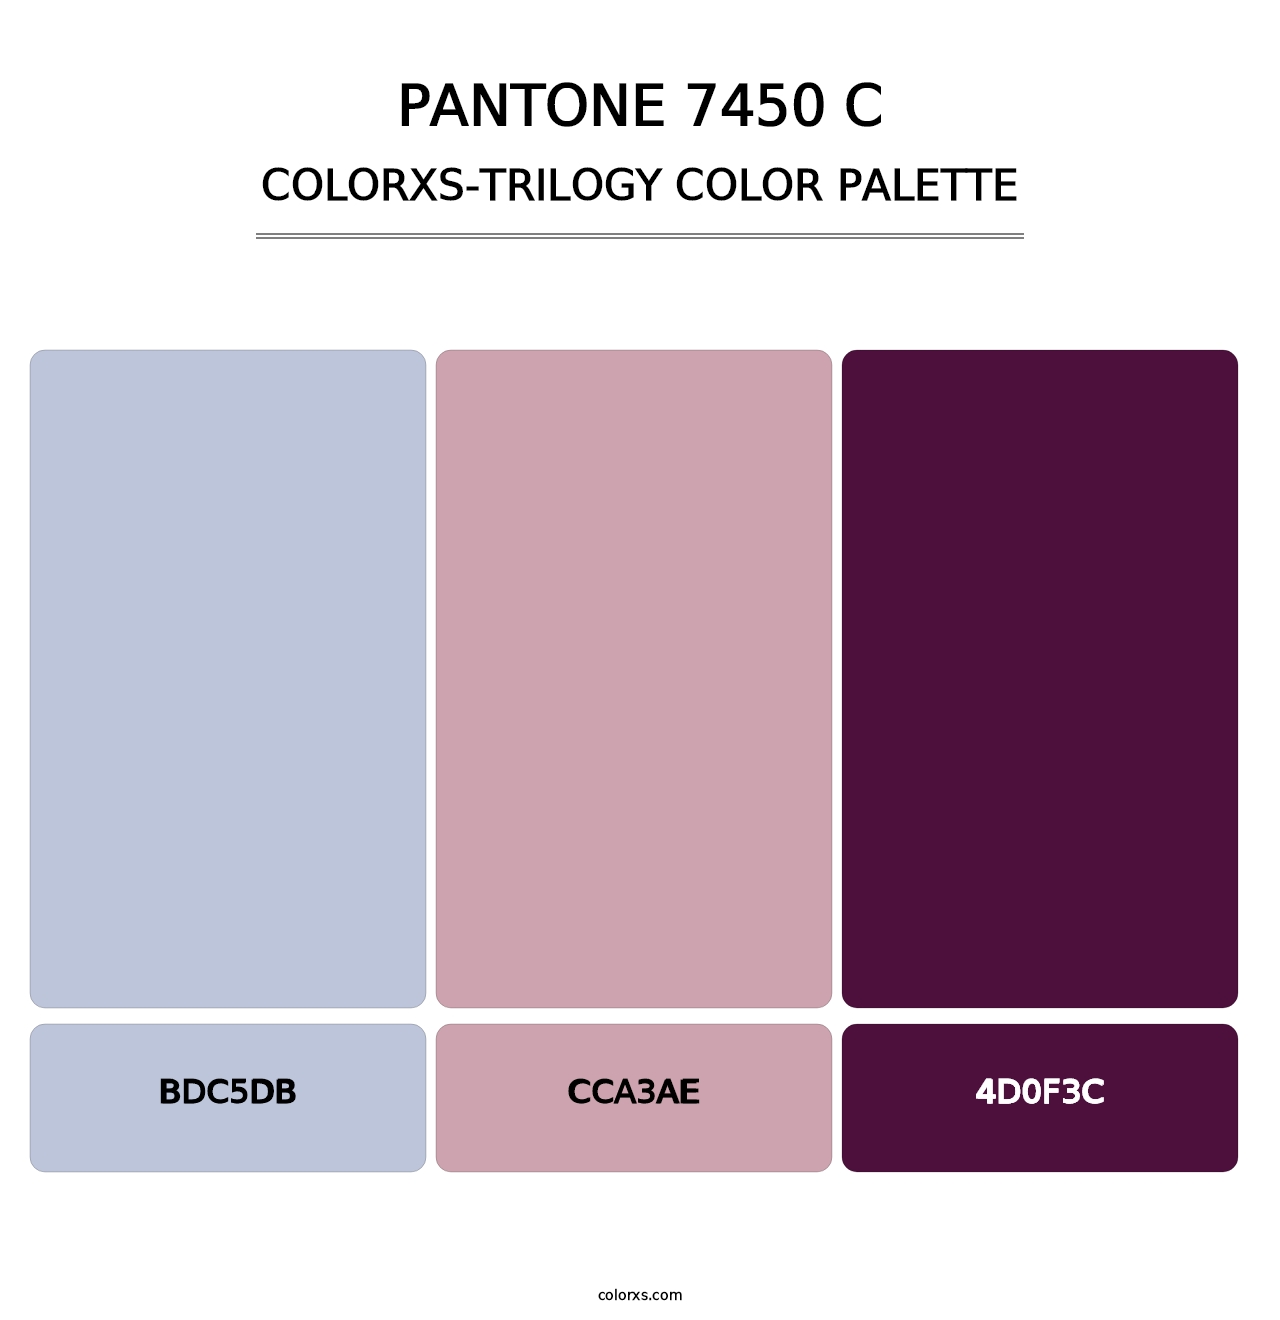 PANTONE 7450 C - Colorxs Trilogy Palette